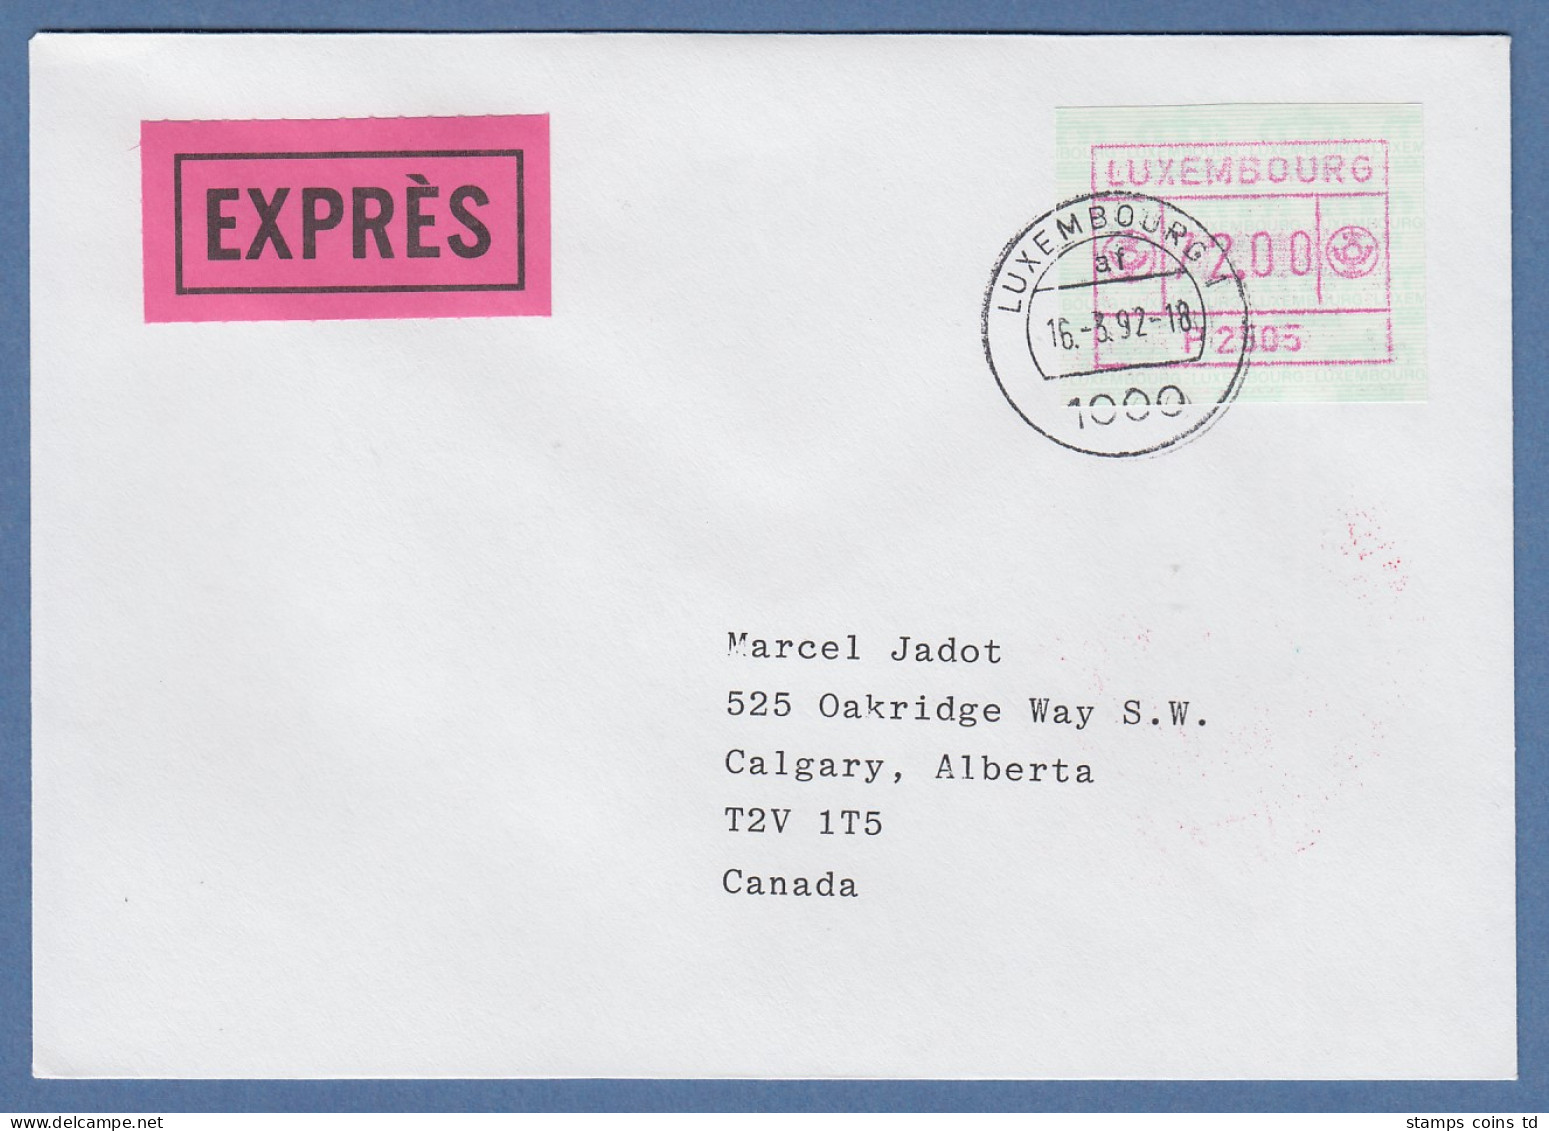 Luxemburg ATM P2505 Wert 72.00 Auf Express-Brief Nach Kanada Letzttags-O 16.3.92 - Postage Labels